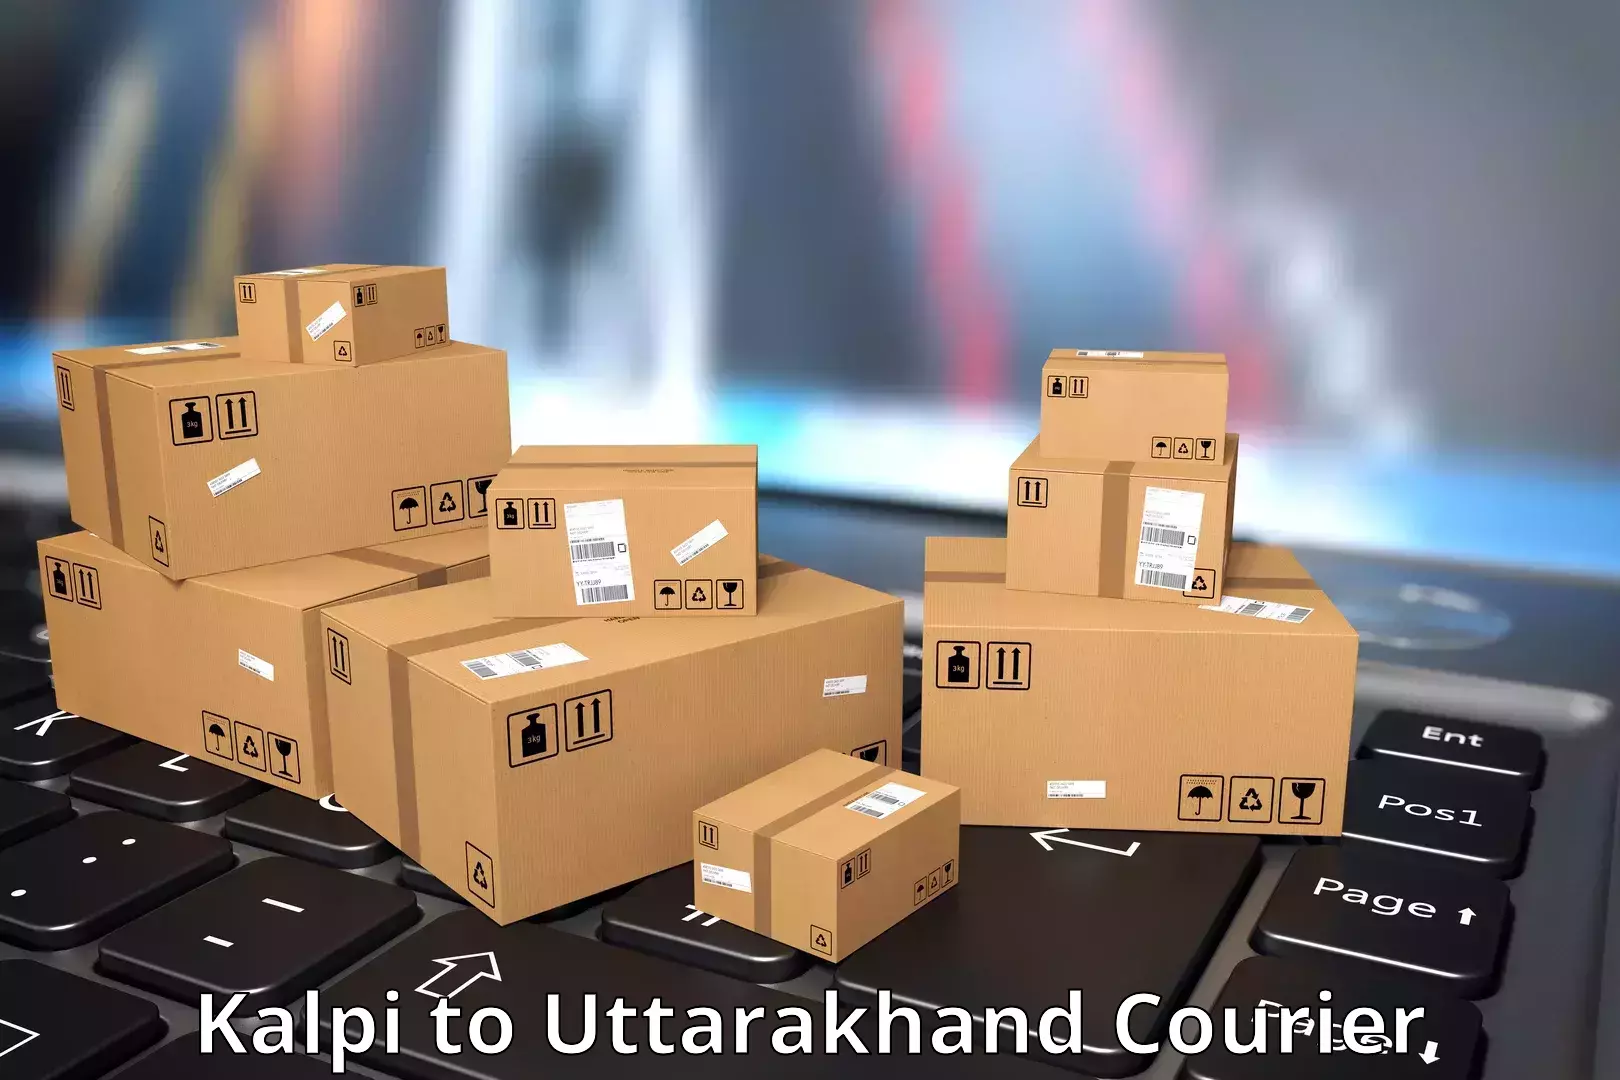 User-friendly courier app Kalpi to Uttarakhand